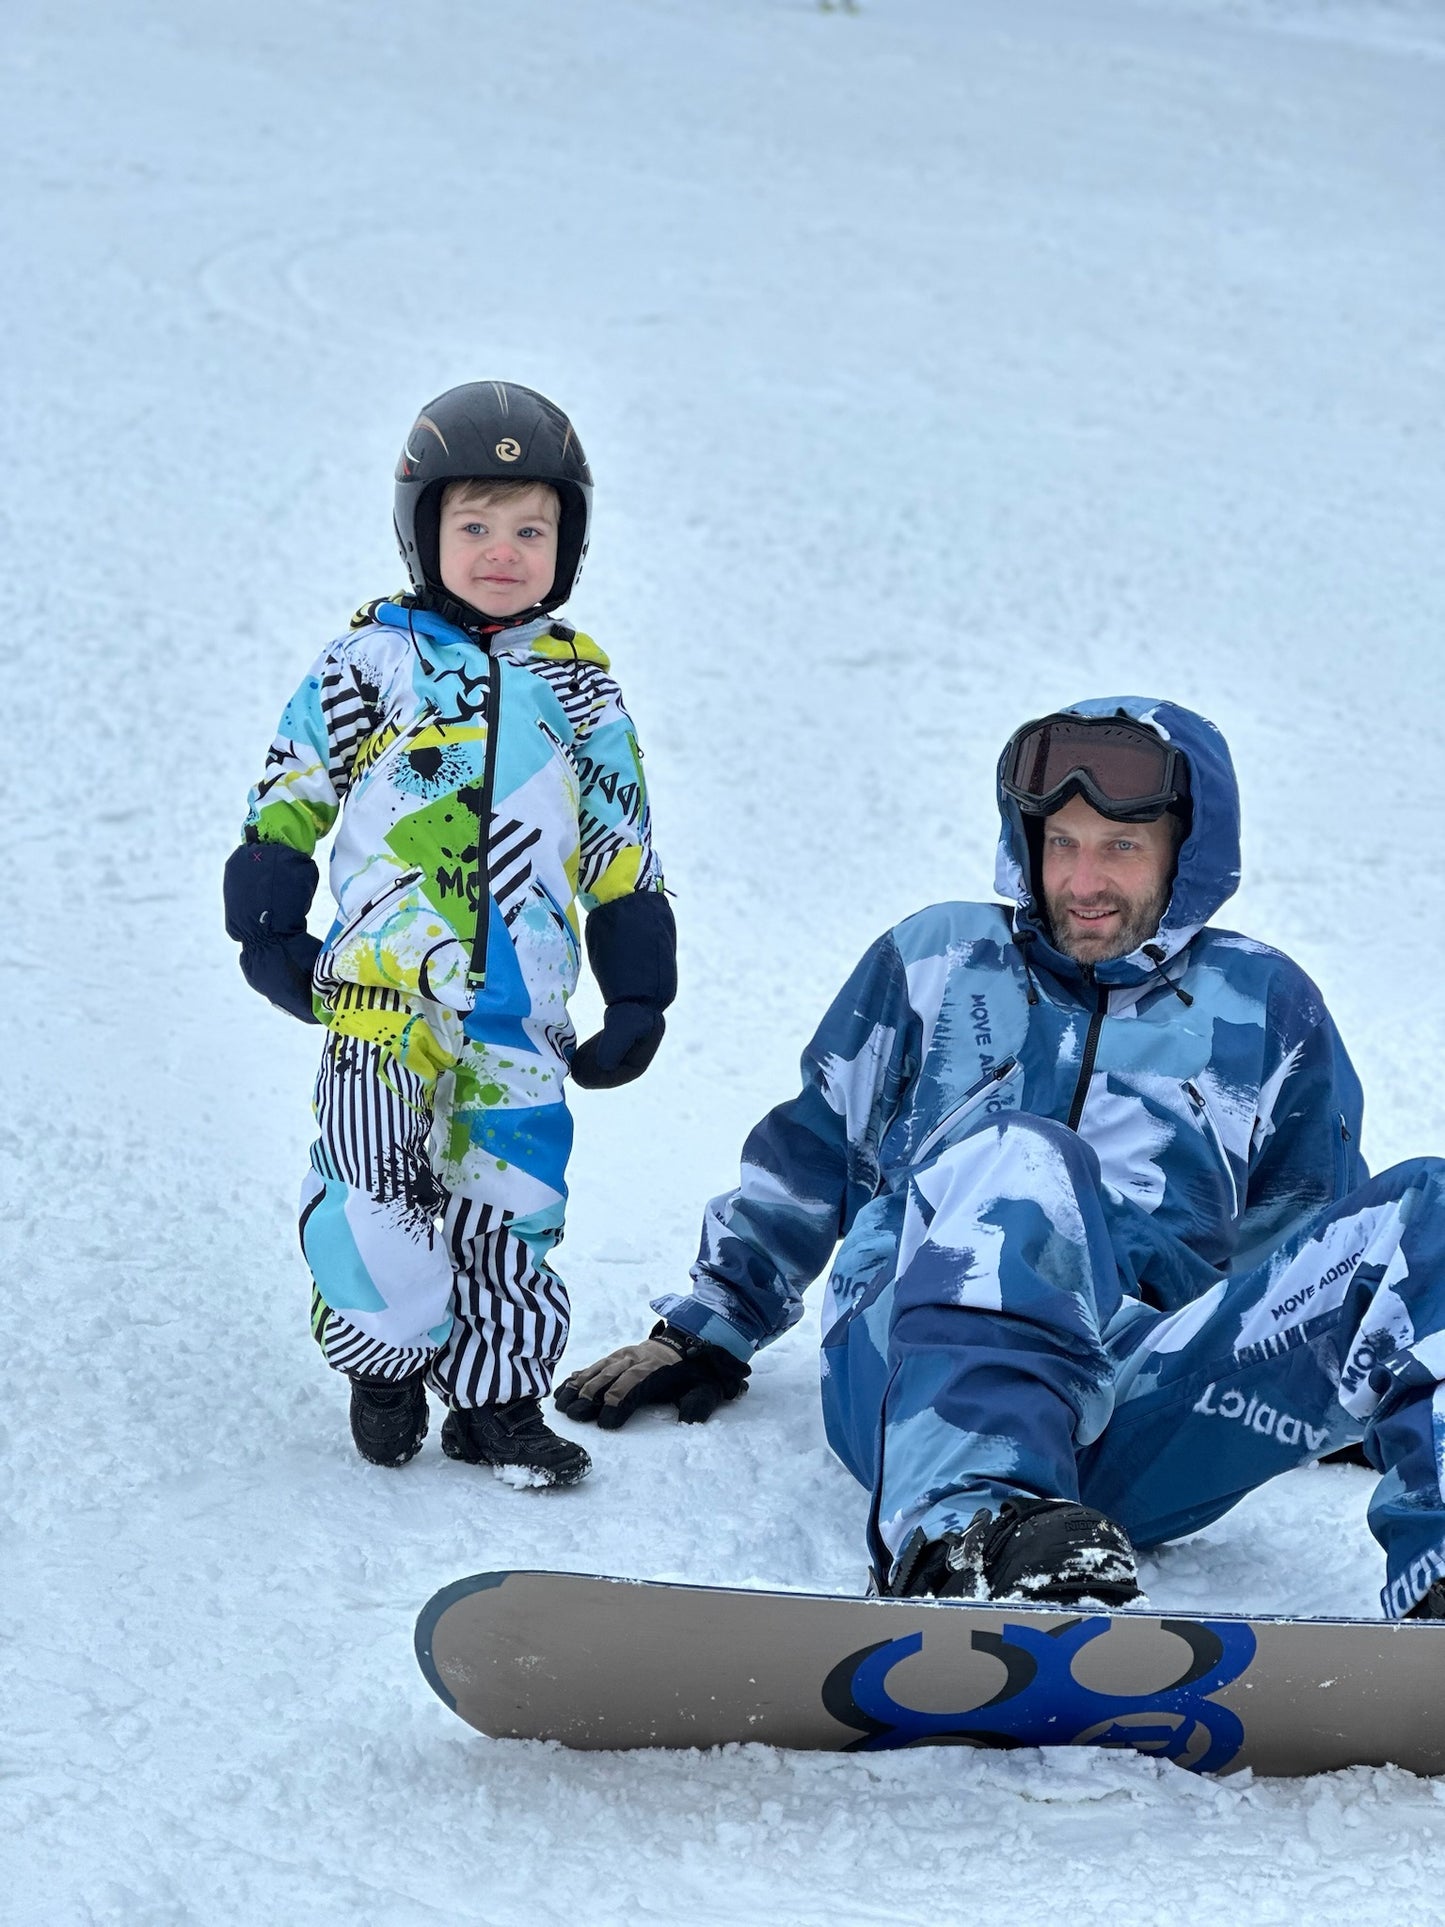 Winter-Ski-Overall für Herren, Snowboard-Kleidung, Snowboard-Anzug, Ski-Overall, Ski-Anzug für Herren, Sportbekleidung, Overall Winter, bunter Schneeanzug